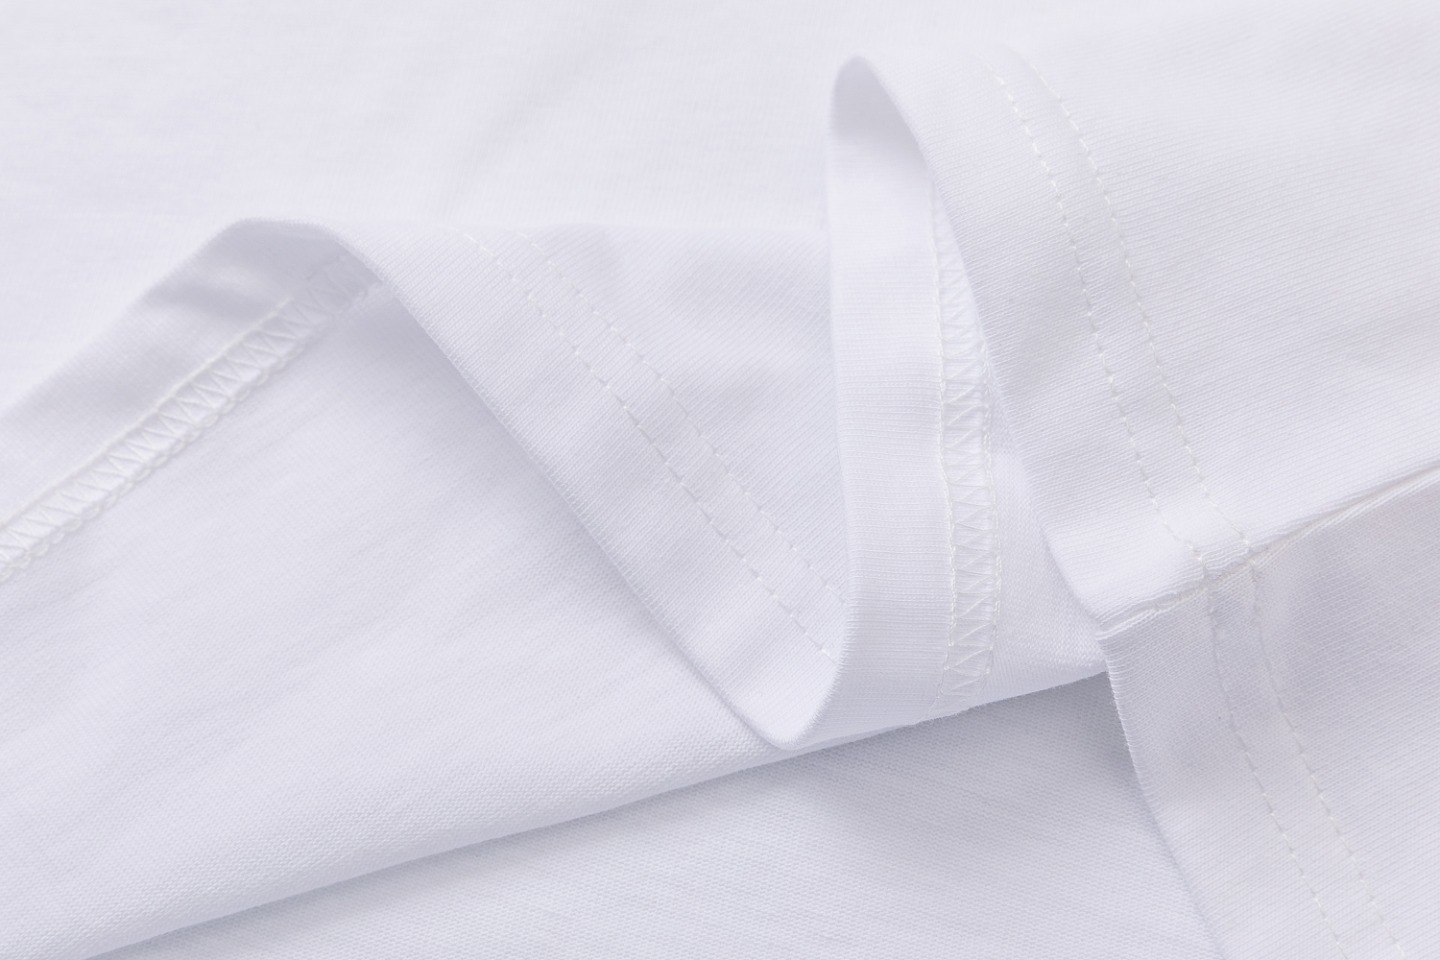 AMIRI 爆買い品質保証 tシャツ 3dモデルスーパーコピー 半袖 柔らかい プリント 純綿 ファッション トップス  2色可選_8